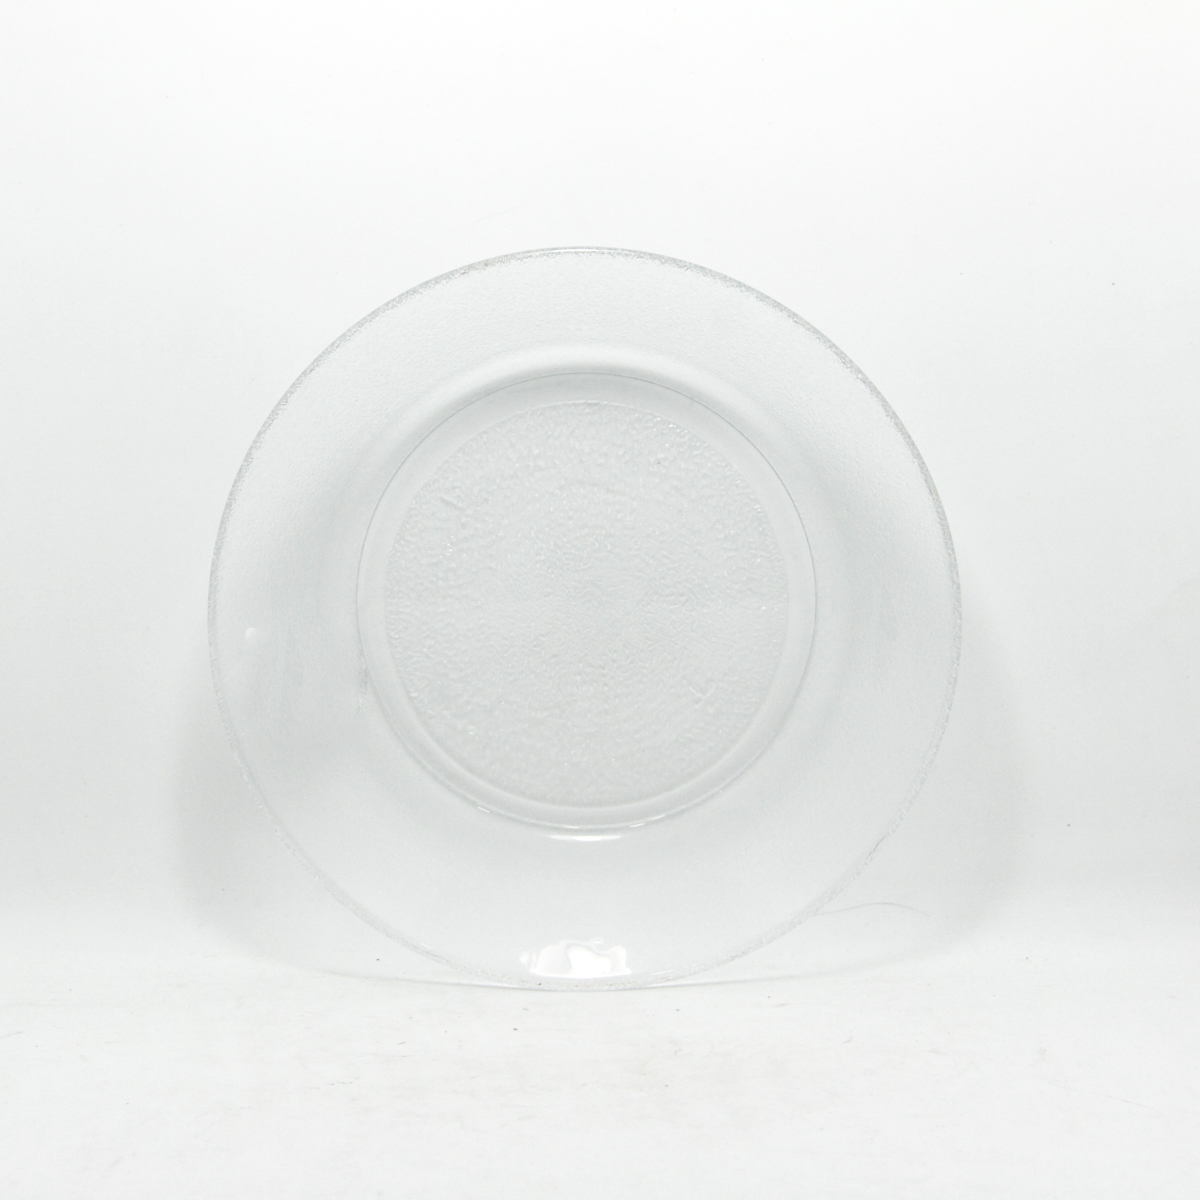 Plato Acquamarine hondo Rigolleau - vidrio - 20cm.